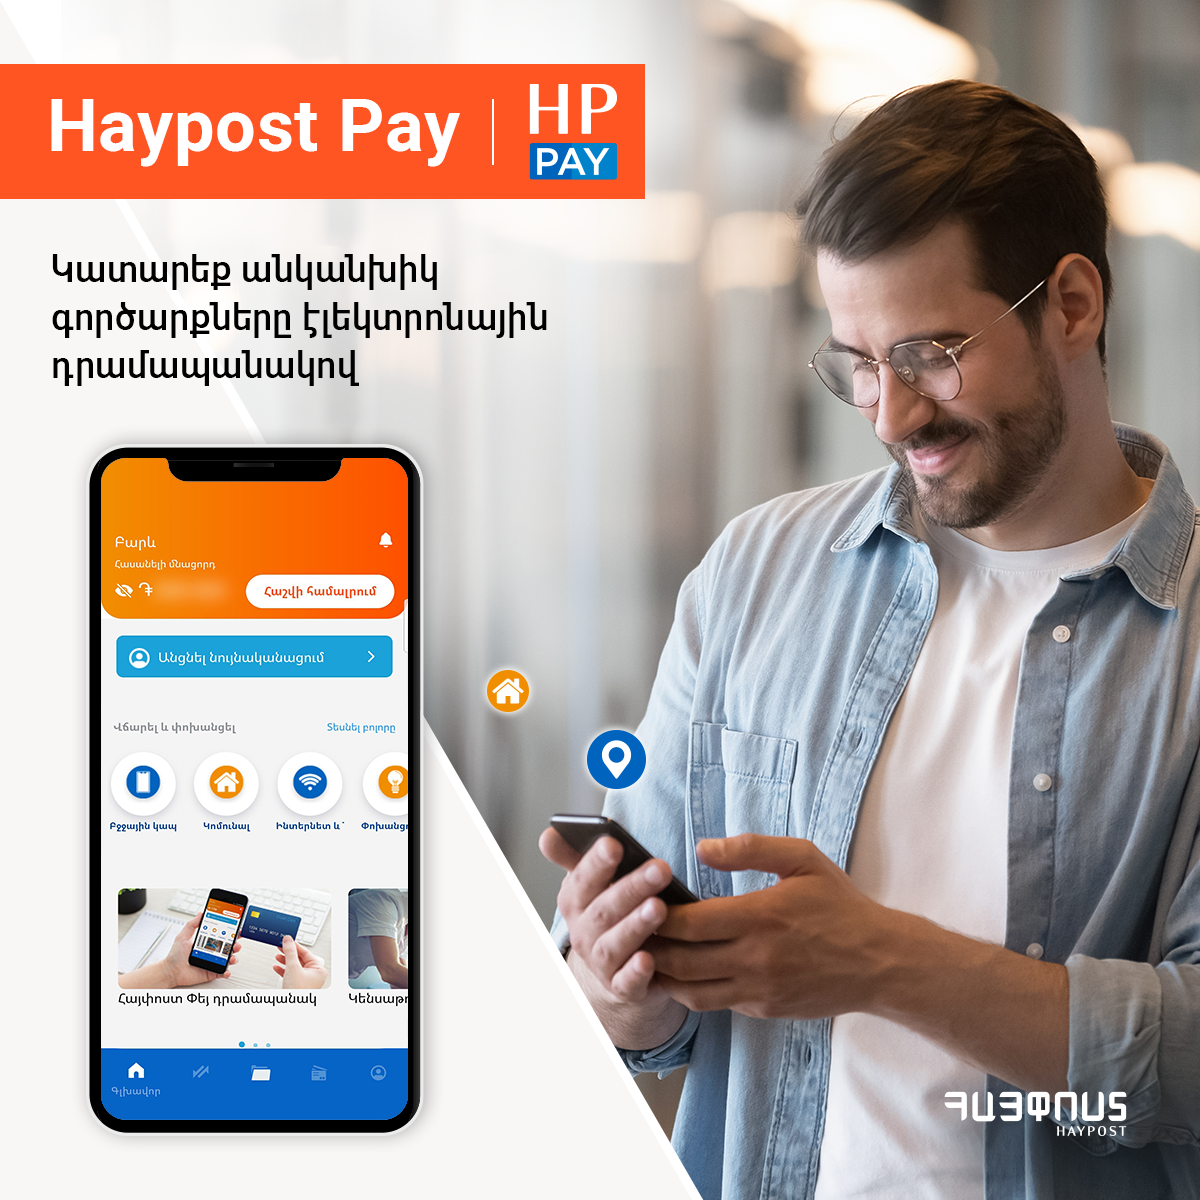 Հայփոստը գործարկում է Haypost Pay դրամապանակի բետա տարբերակը